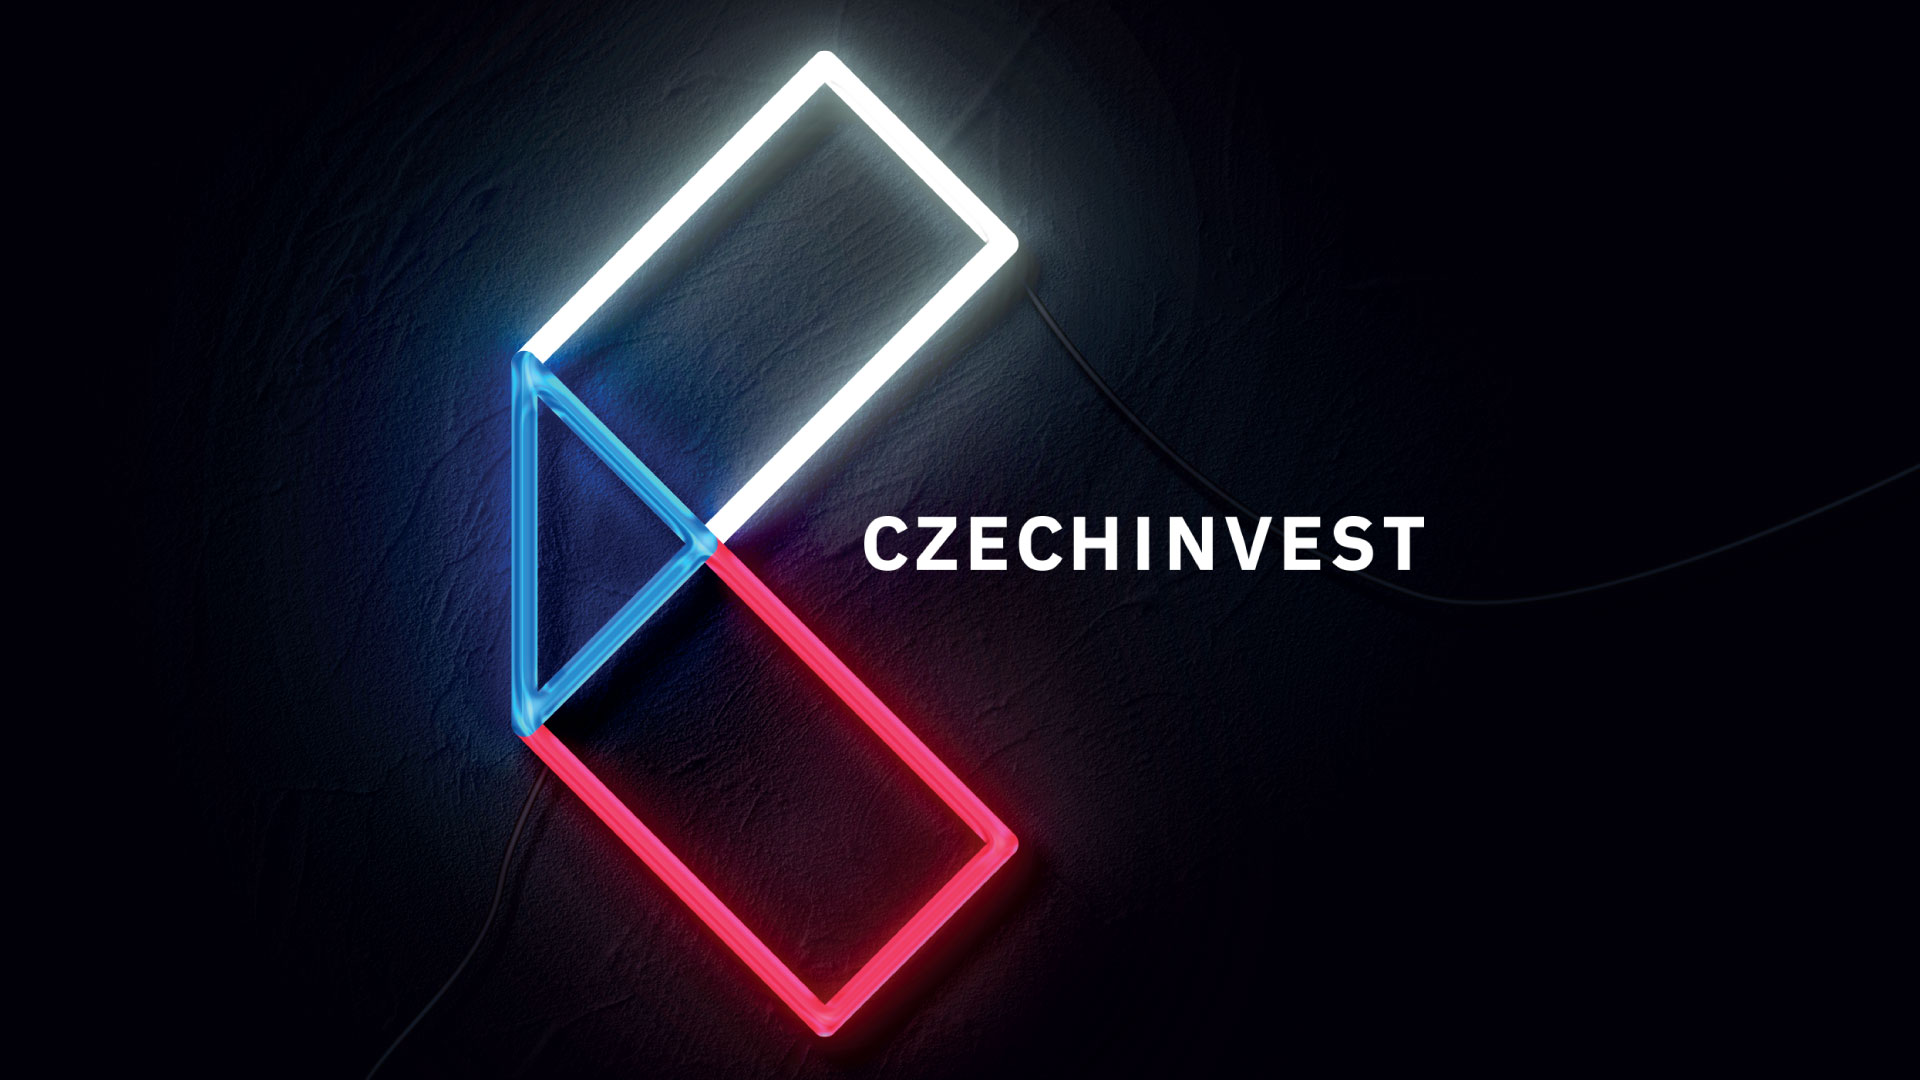 CzechInvest — vizuální identita